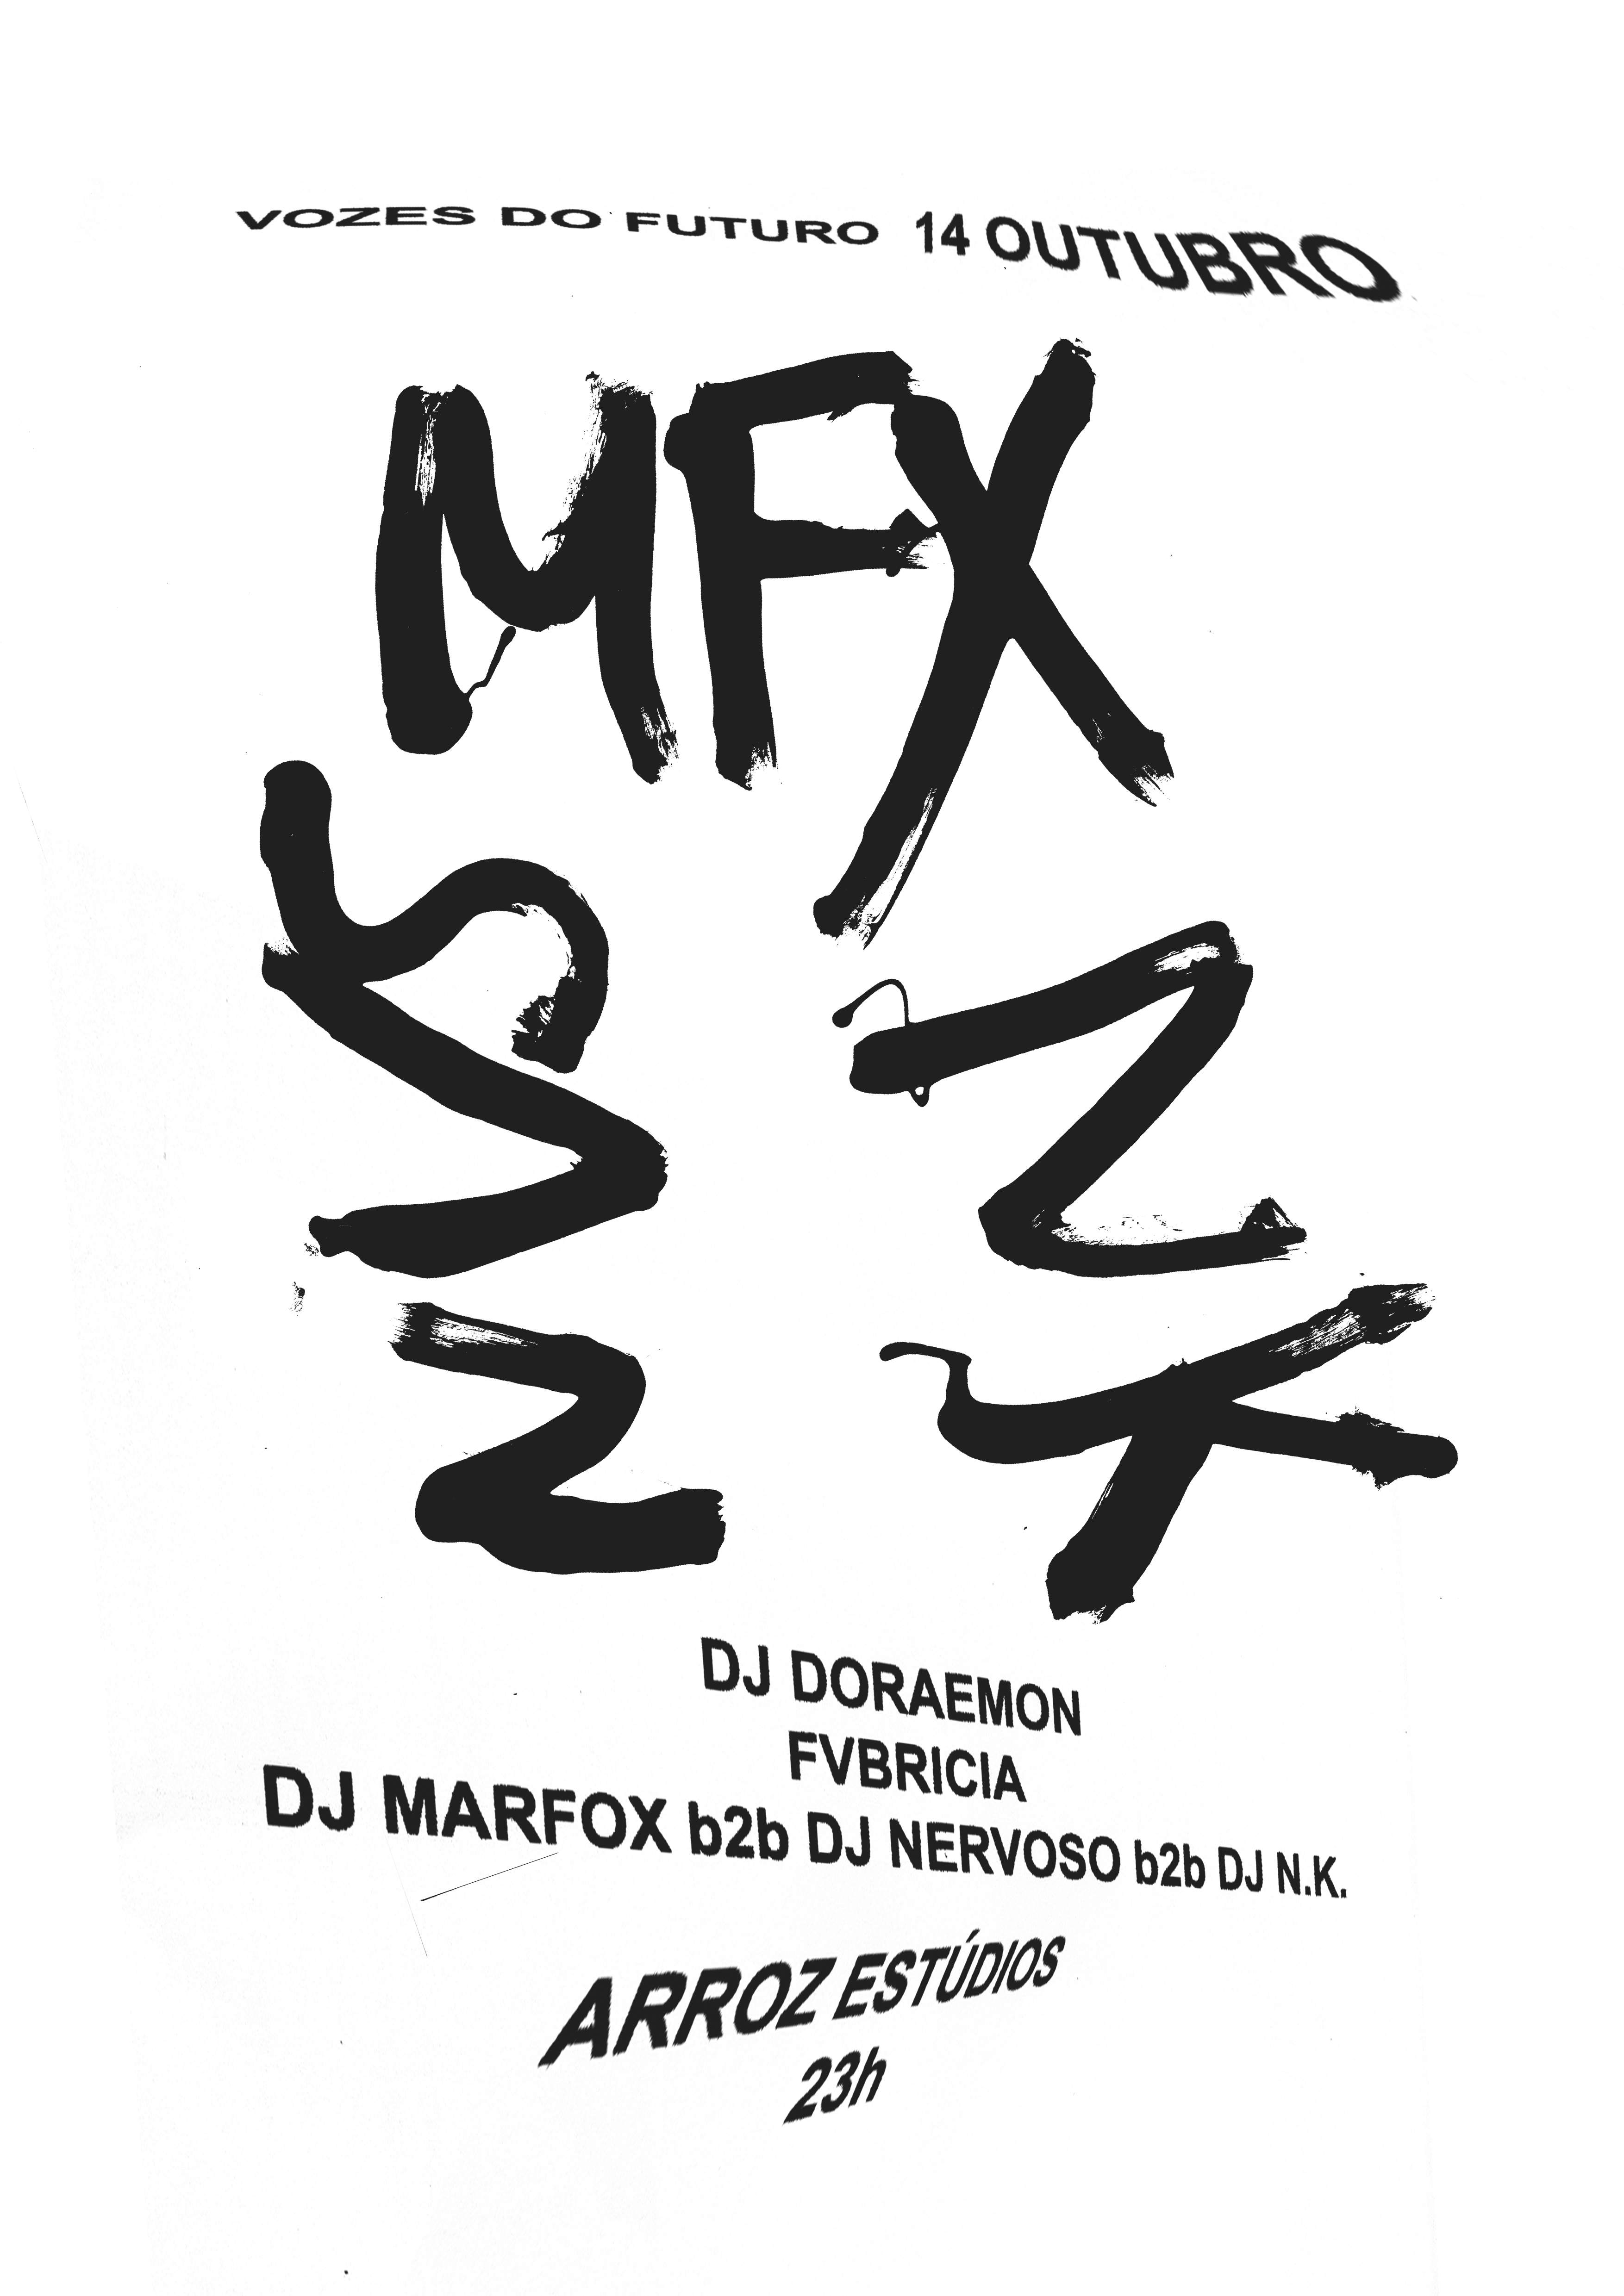 Vozes Do Futuro Closing Party: DJ Marfox b2b DJ Nervoso b2b Dj N.K., Fvbricia, DJ Doraemon - Página frontal